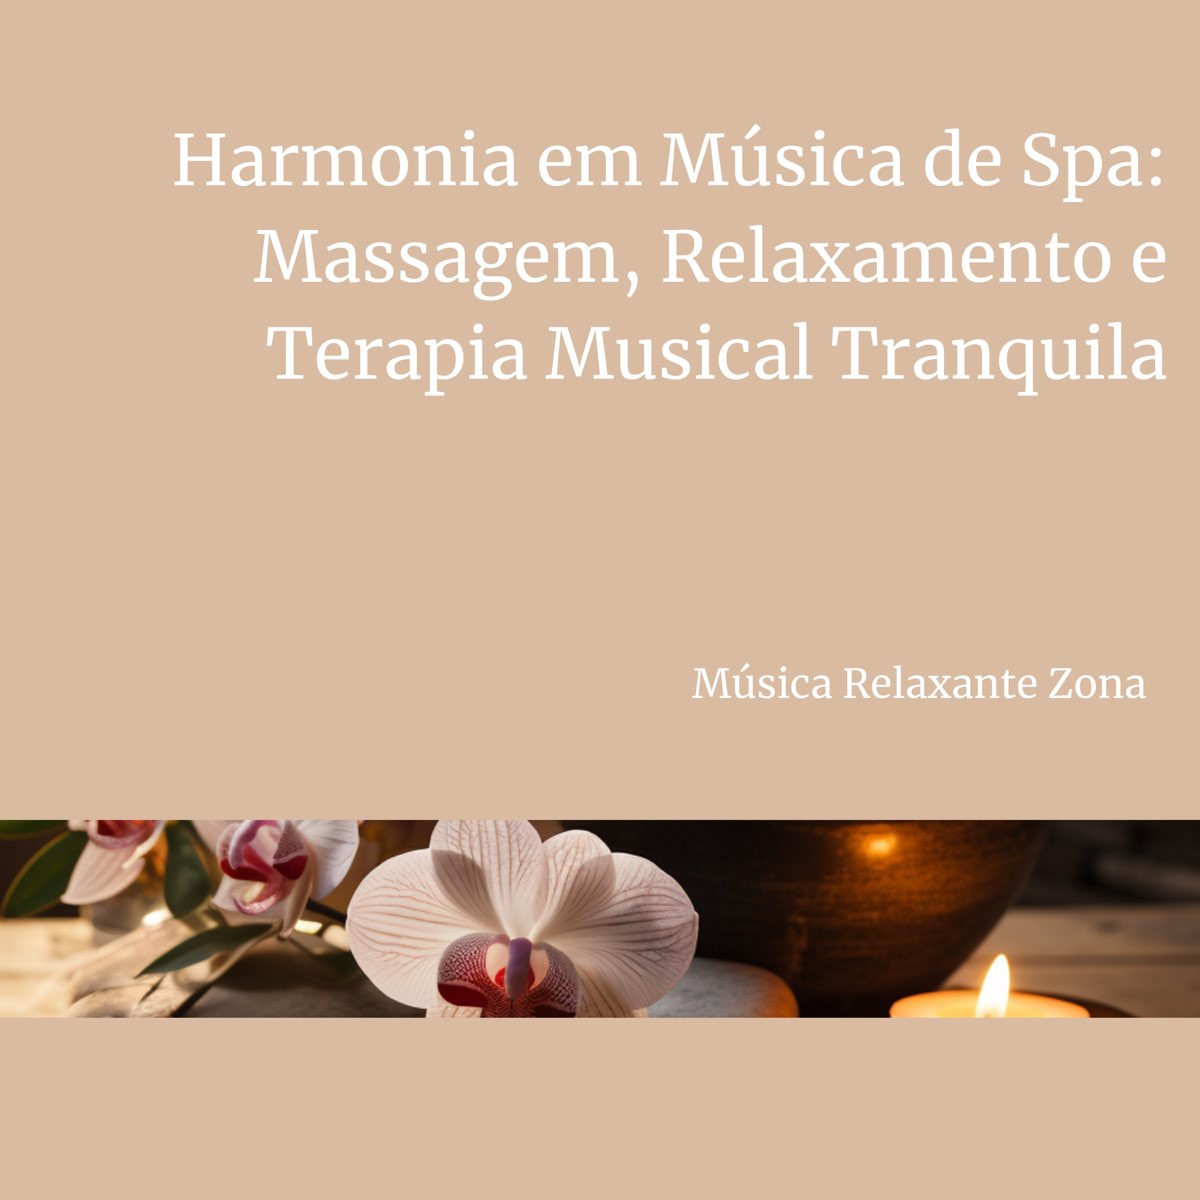 Harmonia em Música de Spa: Massagem, Relaxamento e Terapia Musical  Tranquila - Album by Música Relaxante Zona - Apple Music